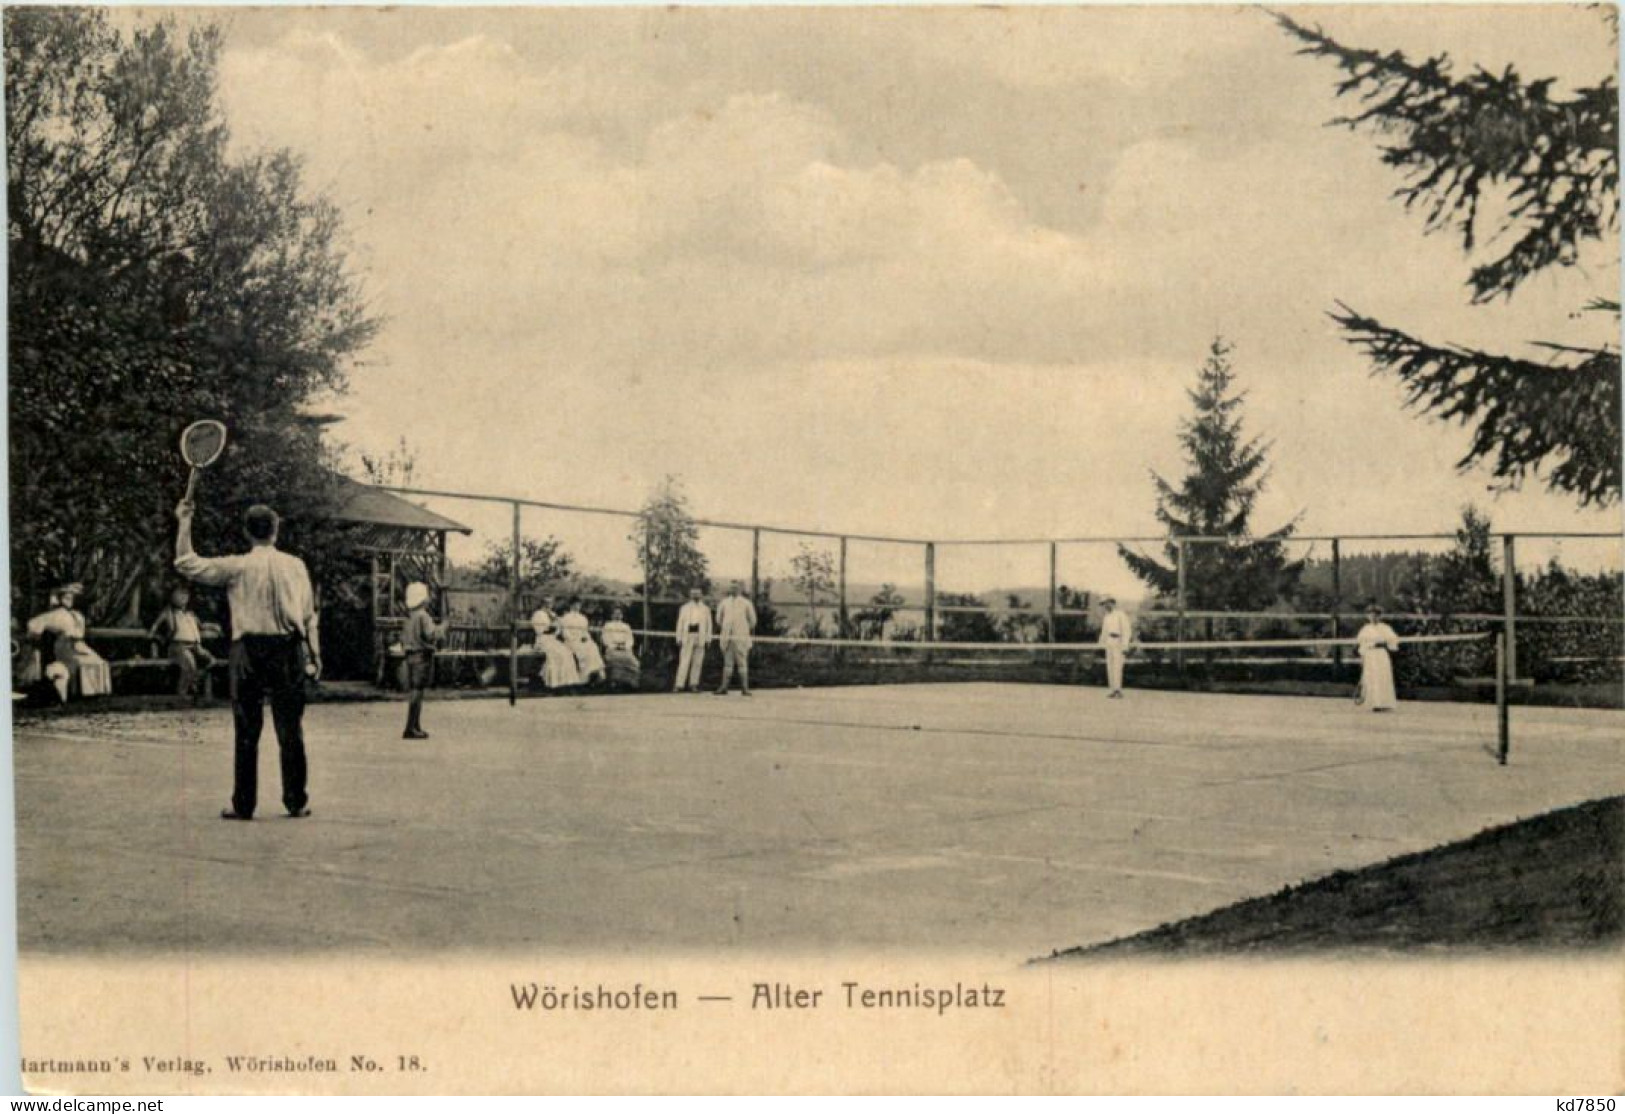 Wörishofen - Alter Tennisplatz - Tennis